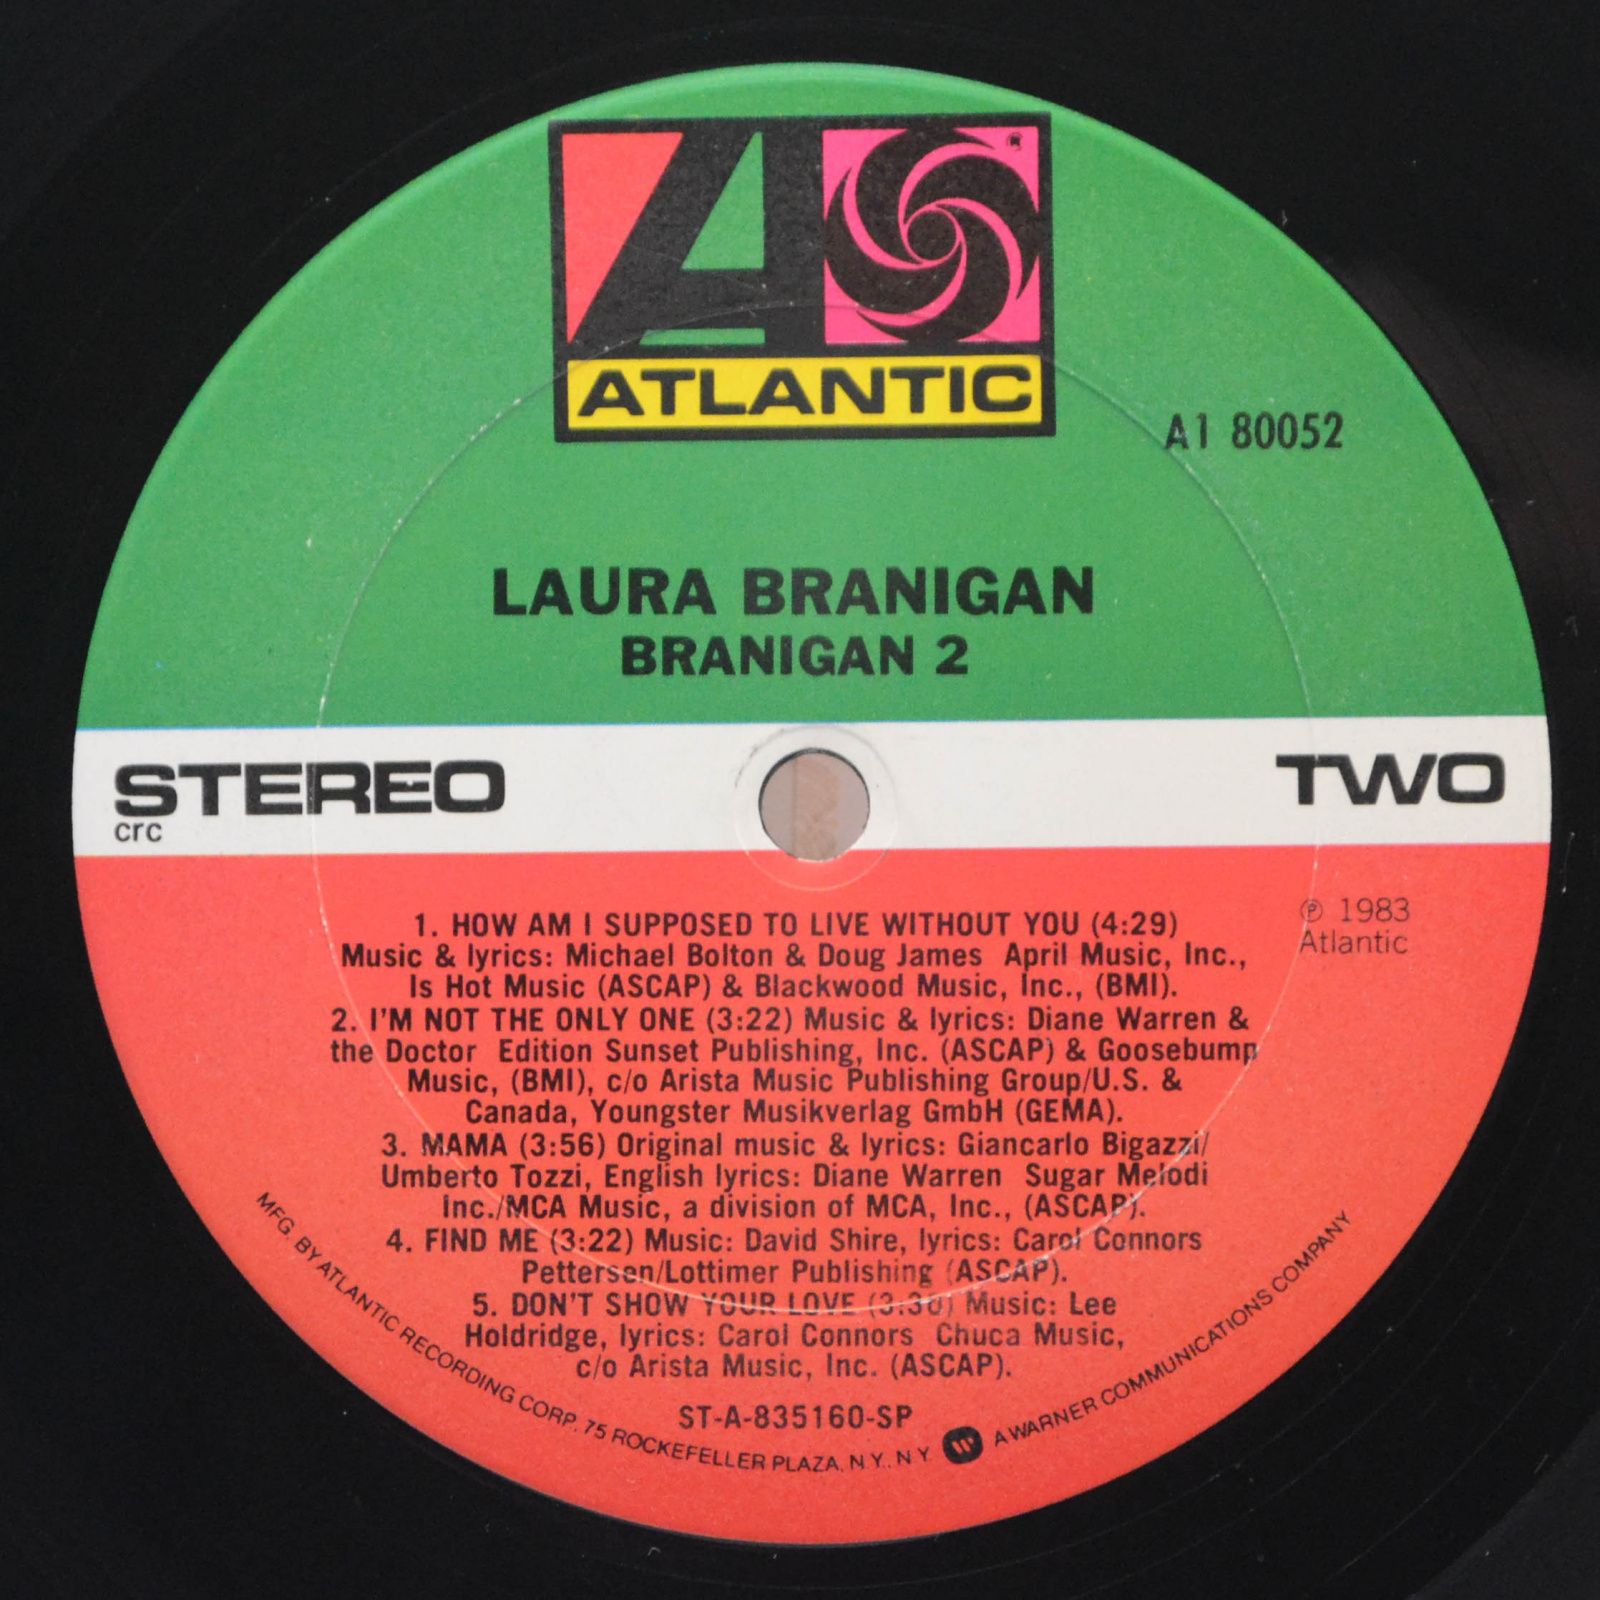 Laura Branigan — Branigan 2, 1983